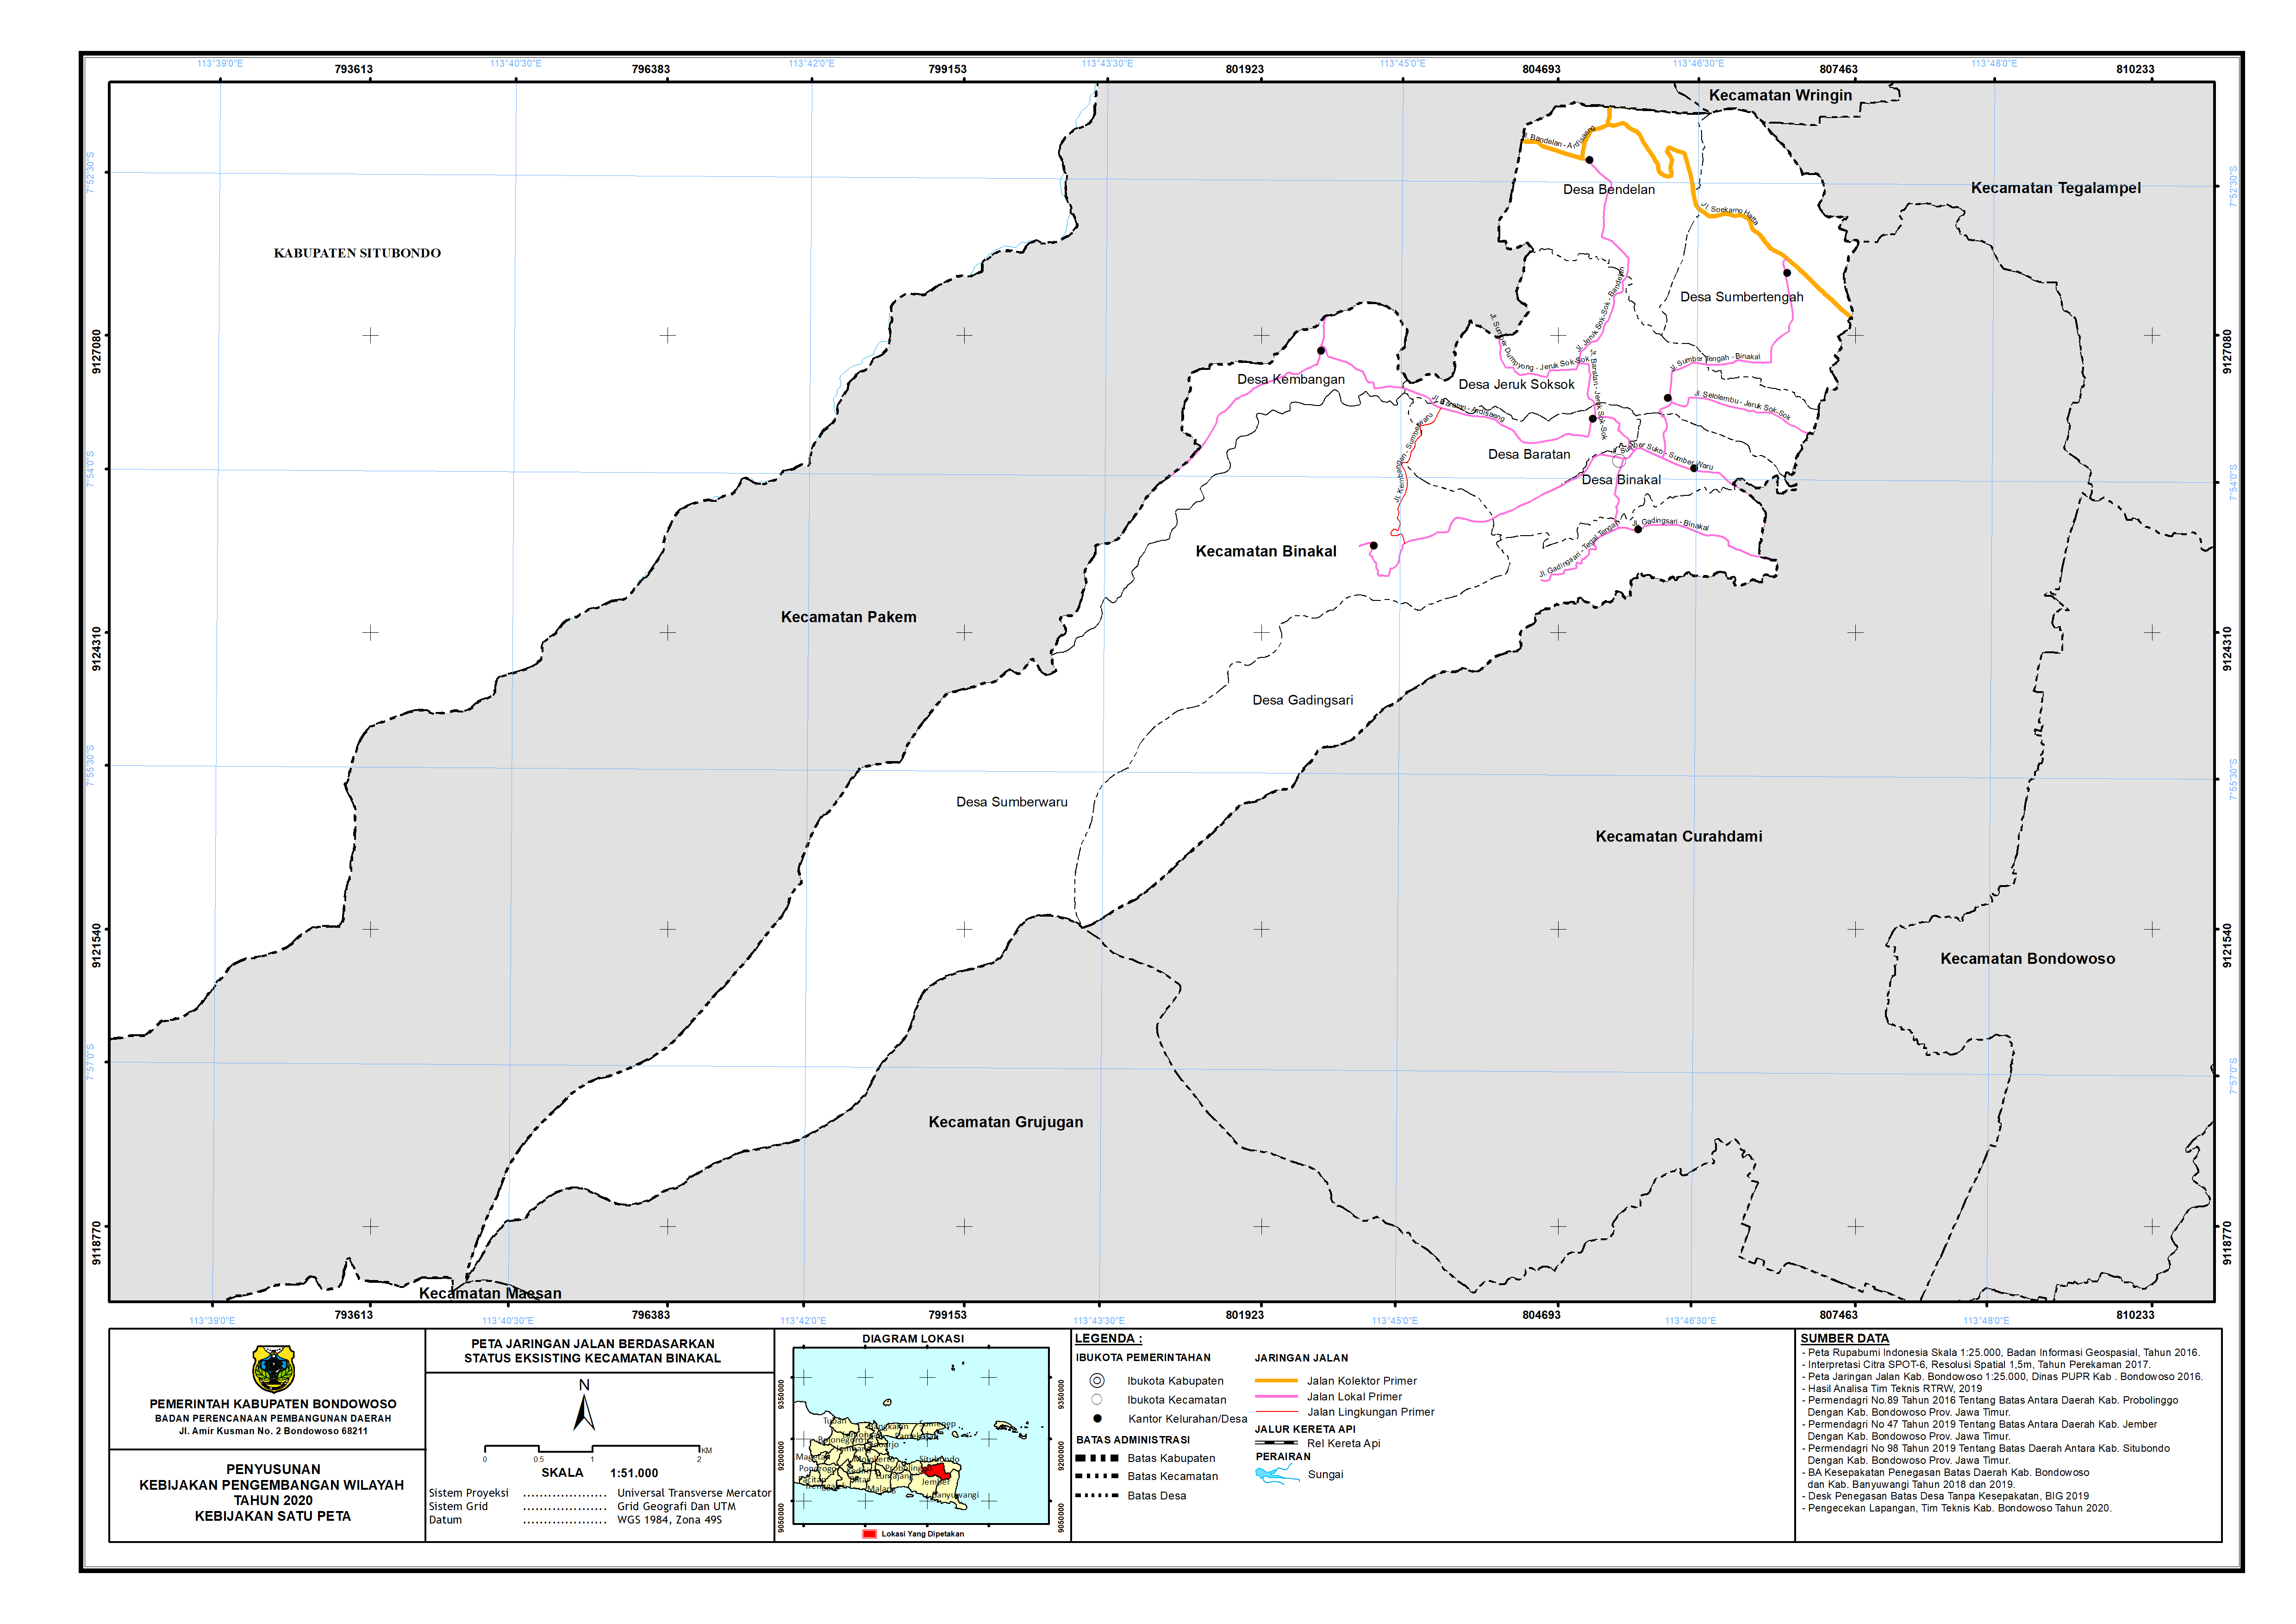 Peta Jaringan Jalan Berdasarkan Status Eksisting Kecamatan Binakal.png